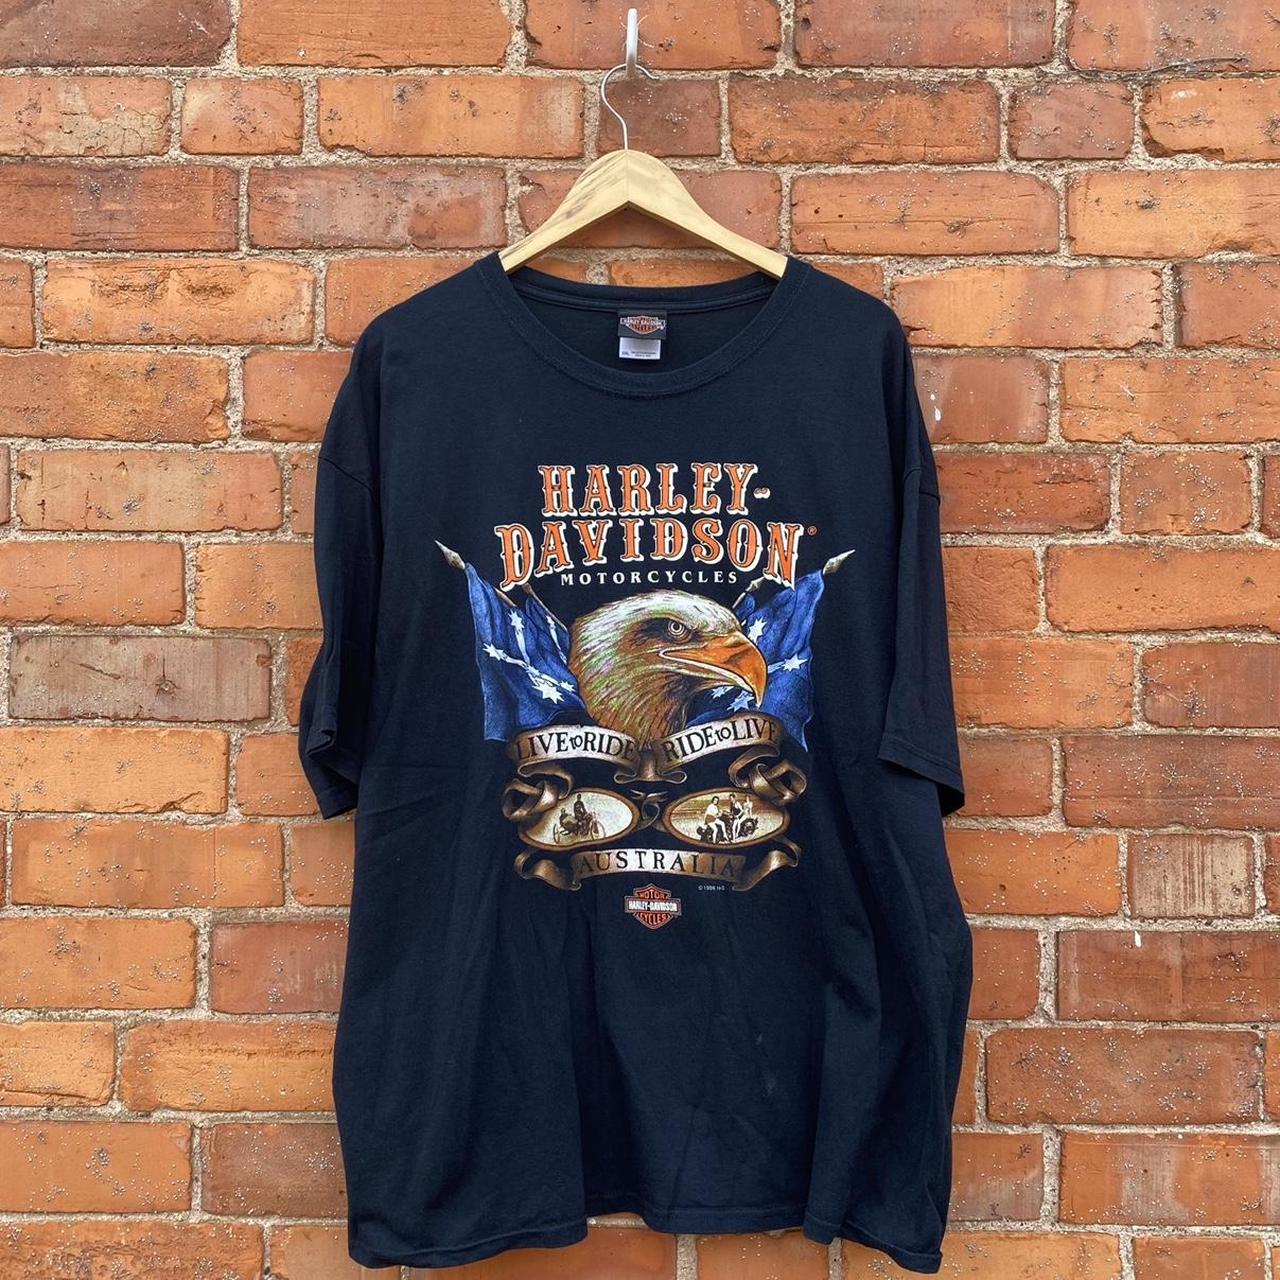 Vintage 1996 HARLEY DAVIDSON T shirt / TEE in a... - Depop